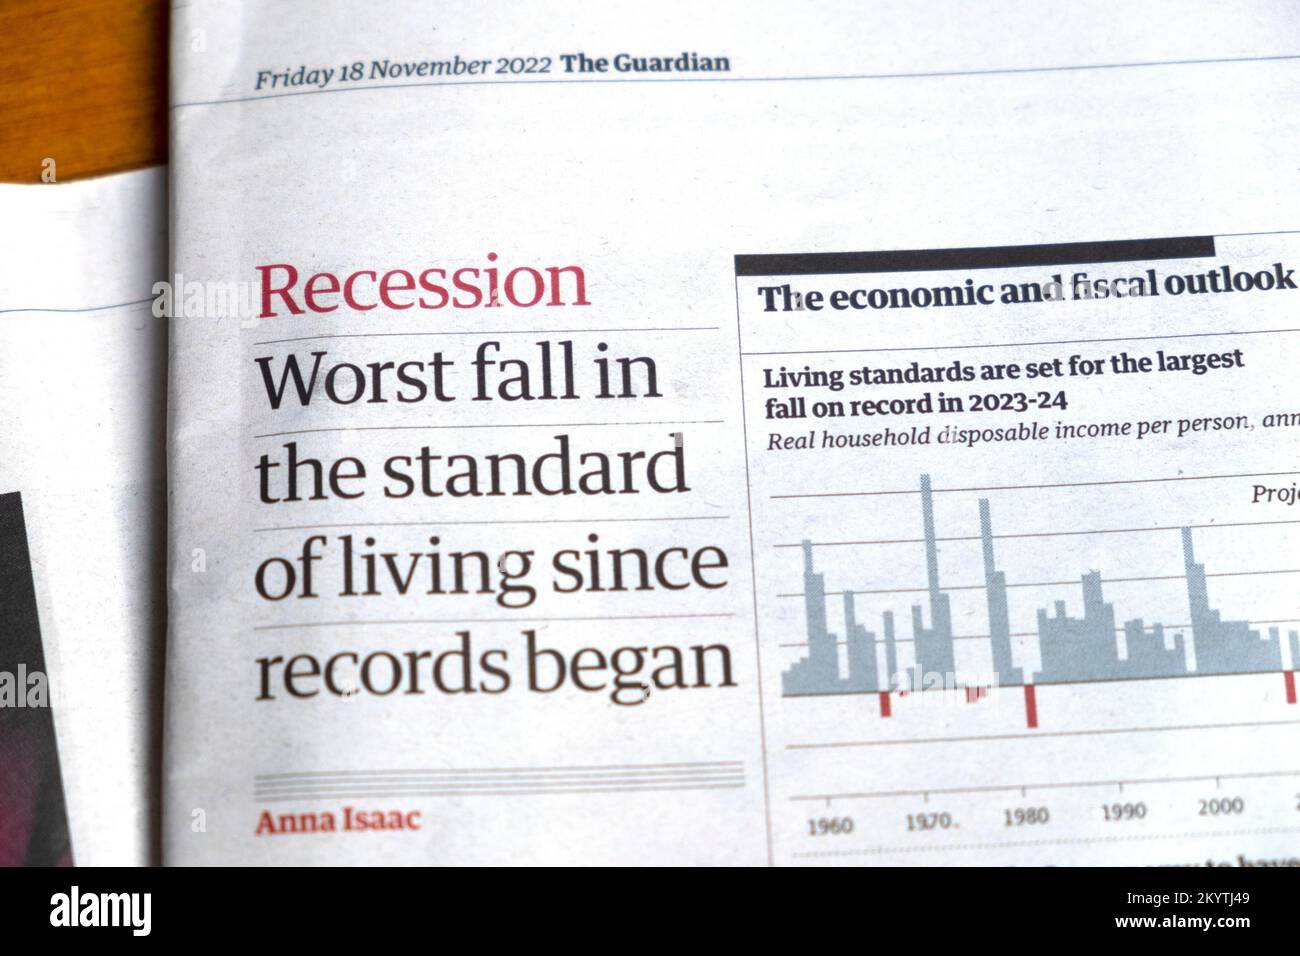 "Rezession schlimmster Fehler im Lebensstandard seit Beginn der Rekorde" Schlagzeile der Zeitung Guardian Britische Wirtschaft, Clipping am 18. November 2022 London UK Stockfoto